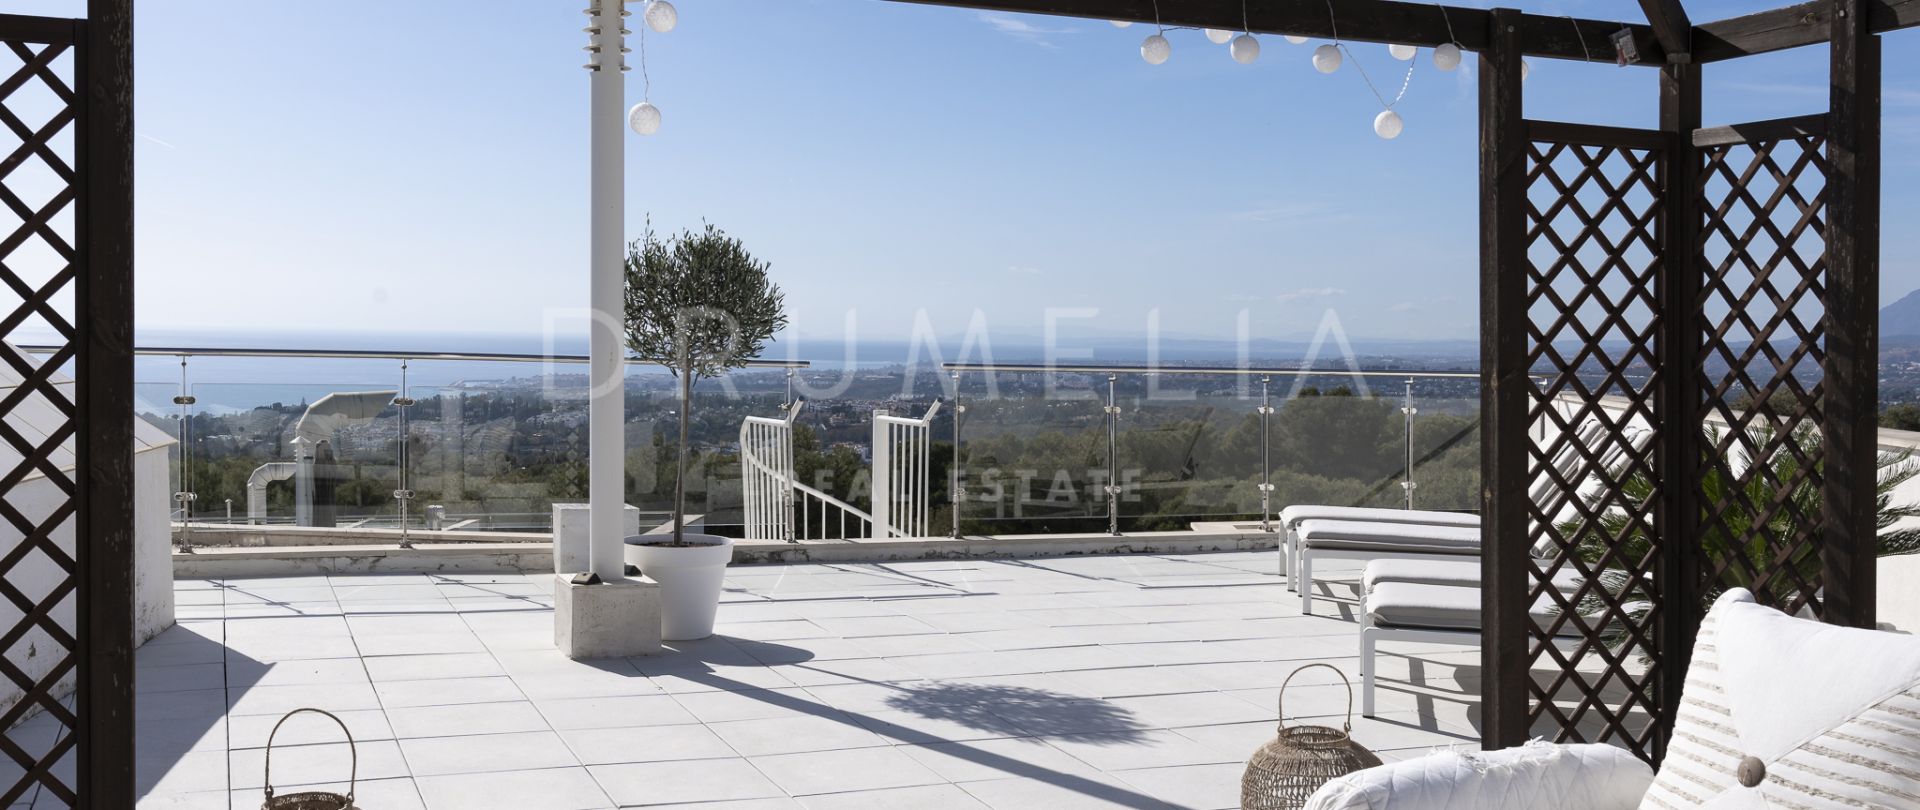 Villa de luxe récemment rénovée à quelques pas de la plage de Cortijo Blanco Puerto Banus, Marbella